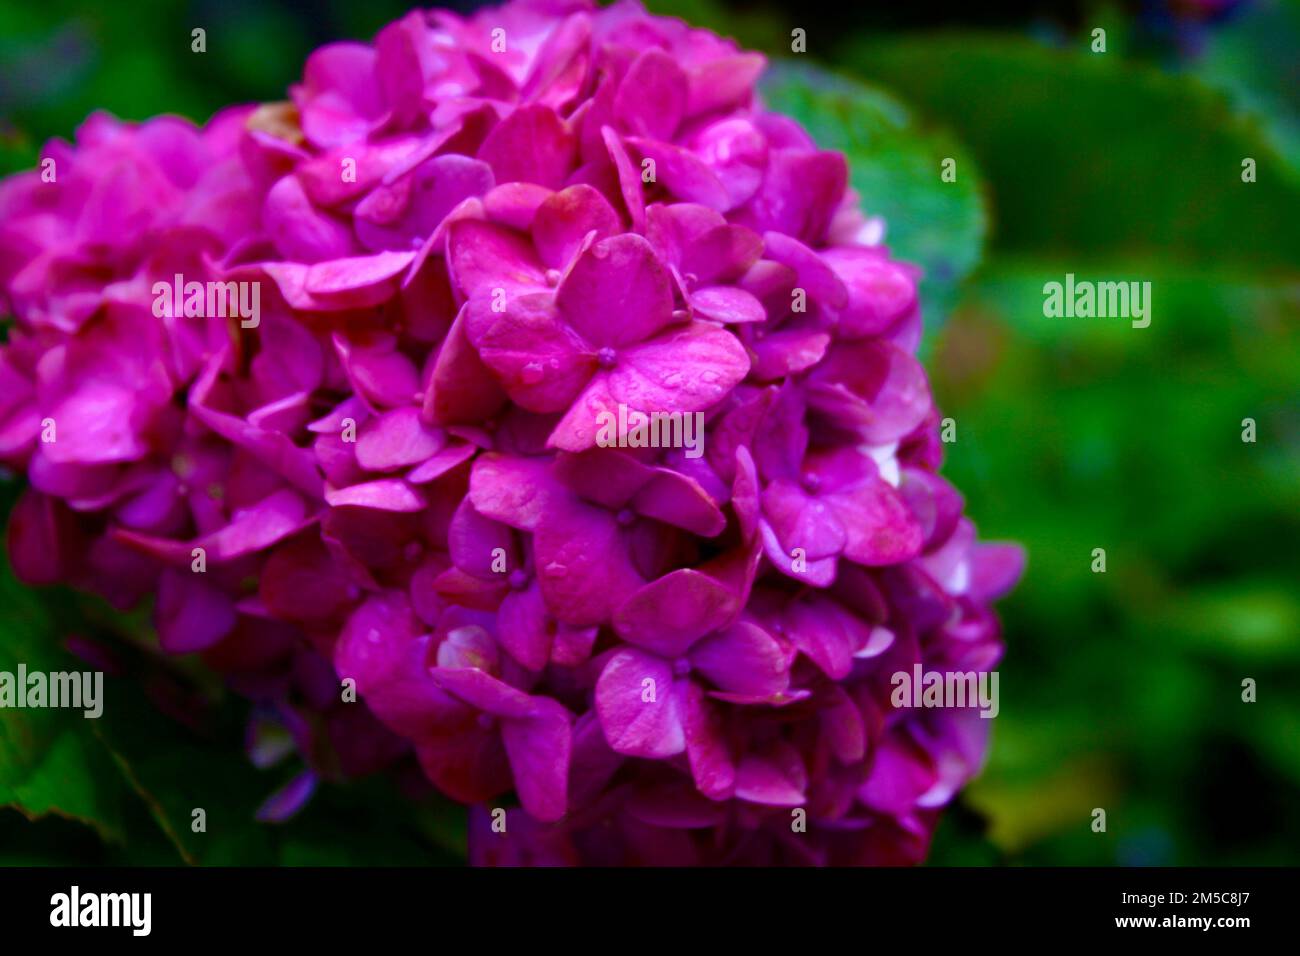 Leuchtend rosafarbener Blumenstrauch auf grünem Blatthintergrund Stockfoto